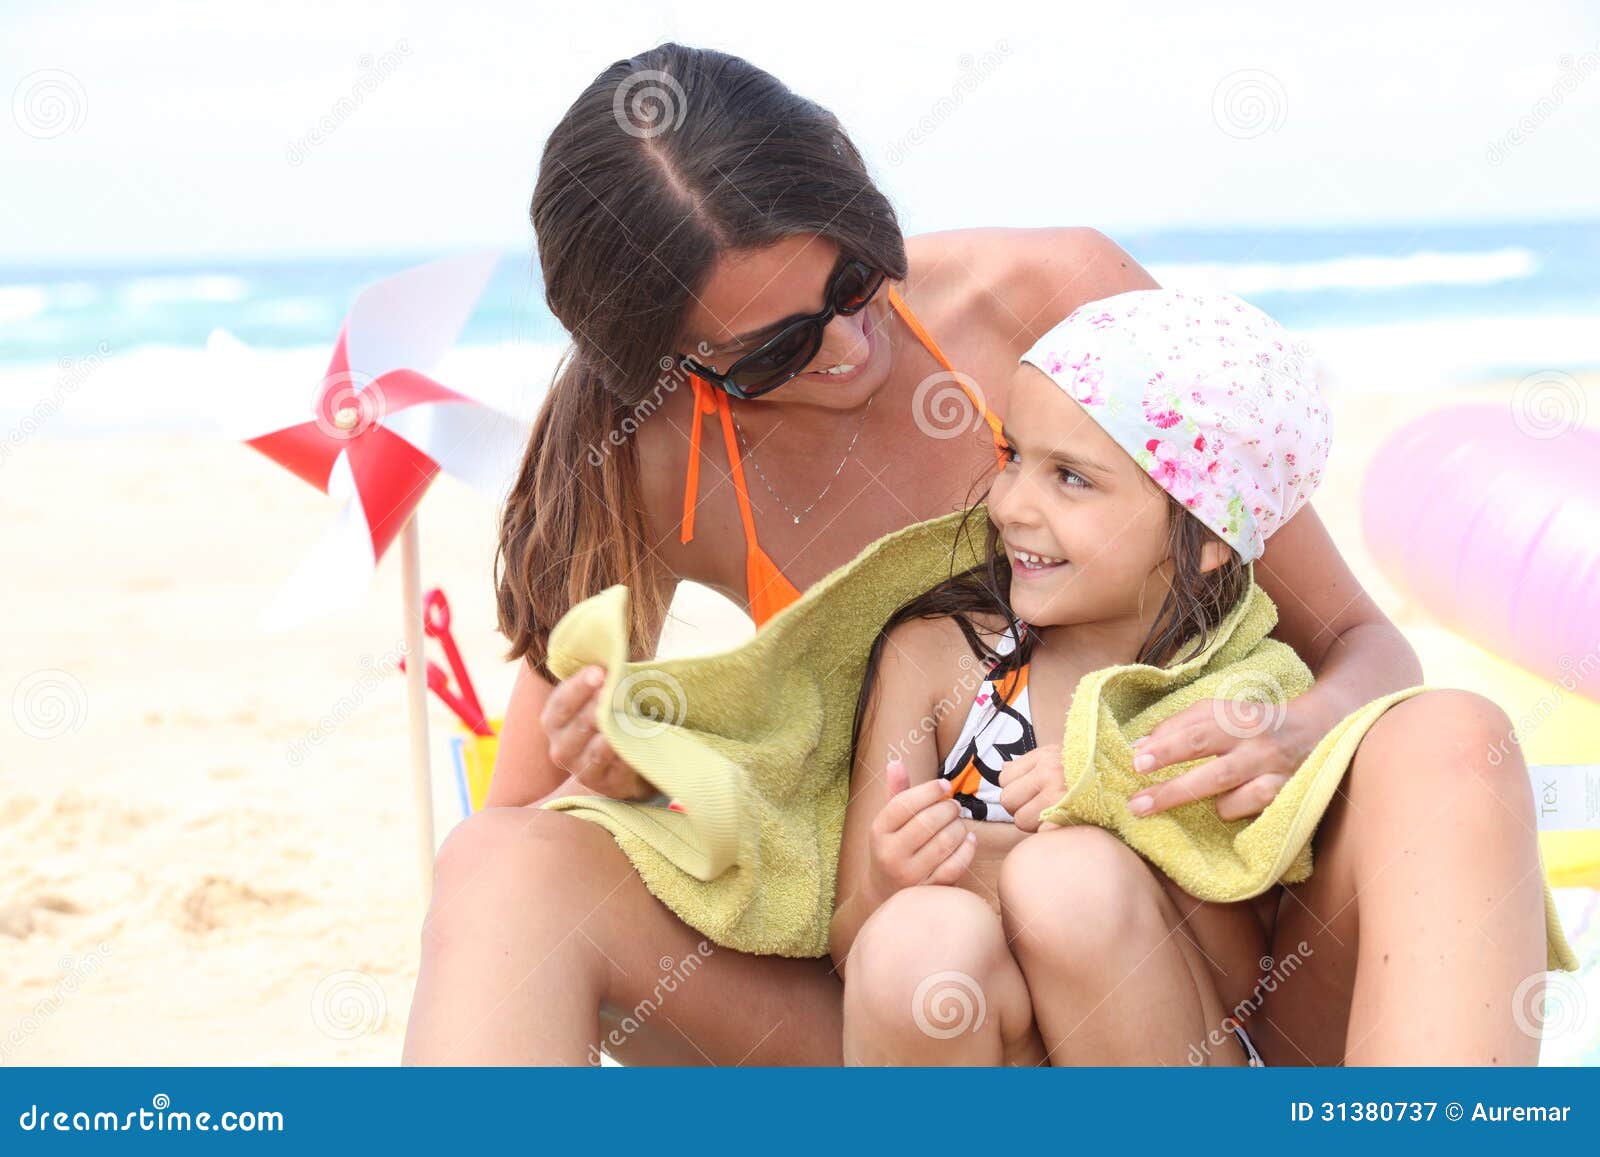 Мамы на нудиском пляже. Дочь на пляже. Мама с дочкой загорают. Мама сдоякой на пляже. Ама с дочерьми на пляже.